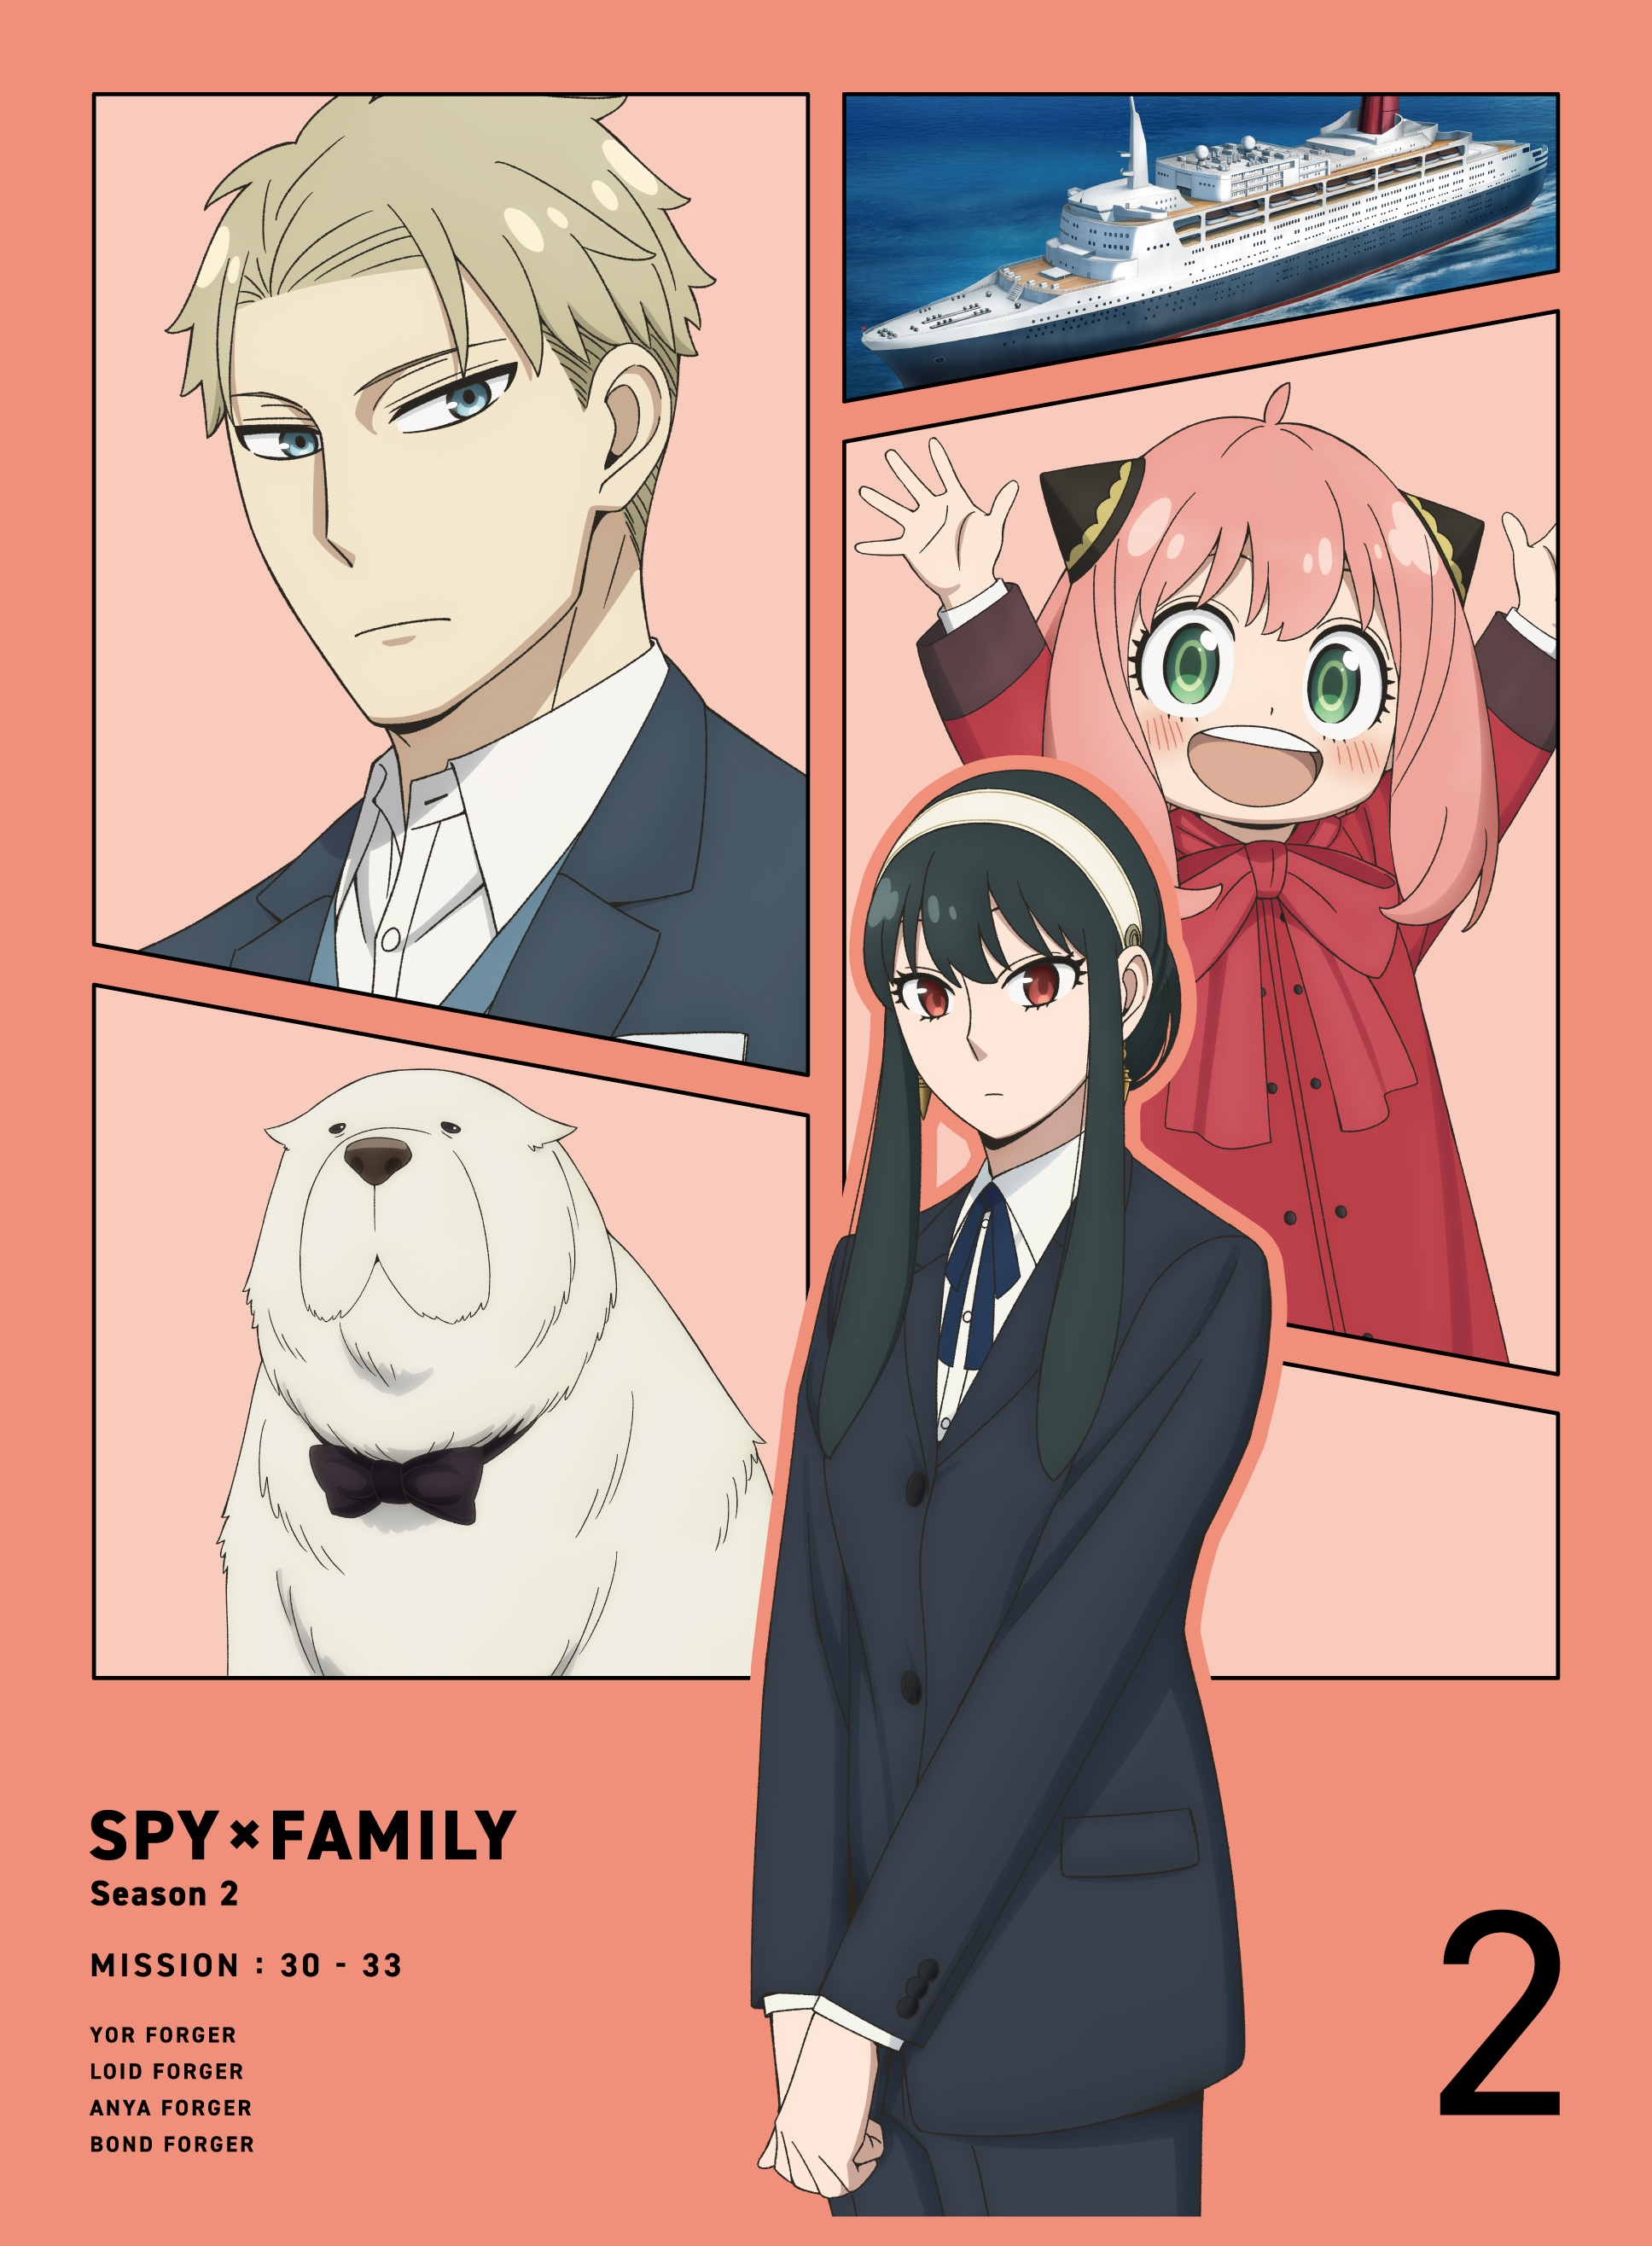 Season 2 Blu-ray u0026 DVD Volume 2 | Spy x Family Wiki | Fandom